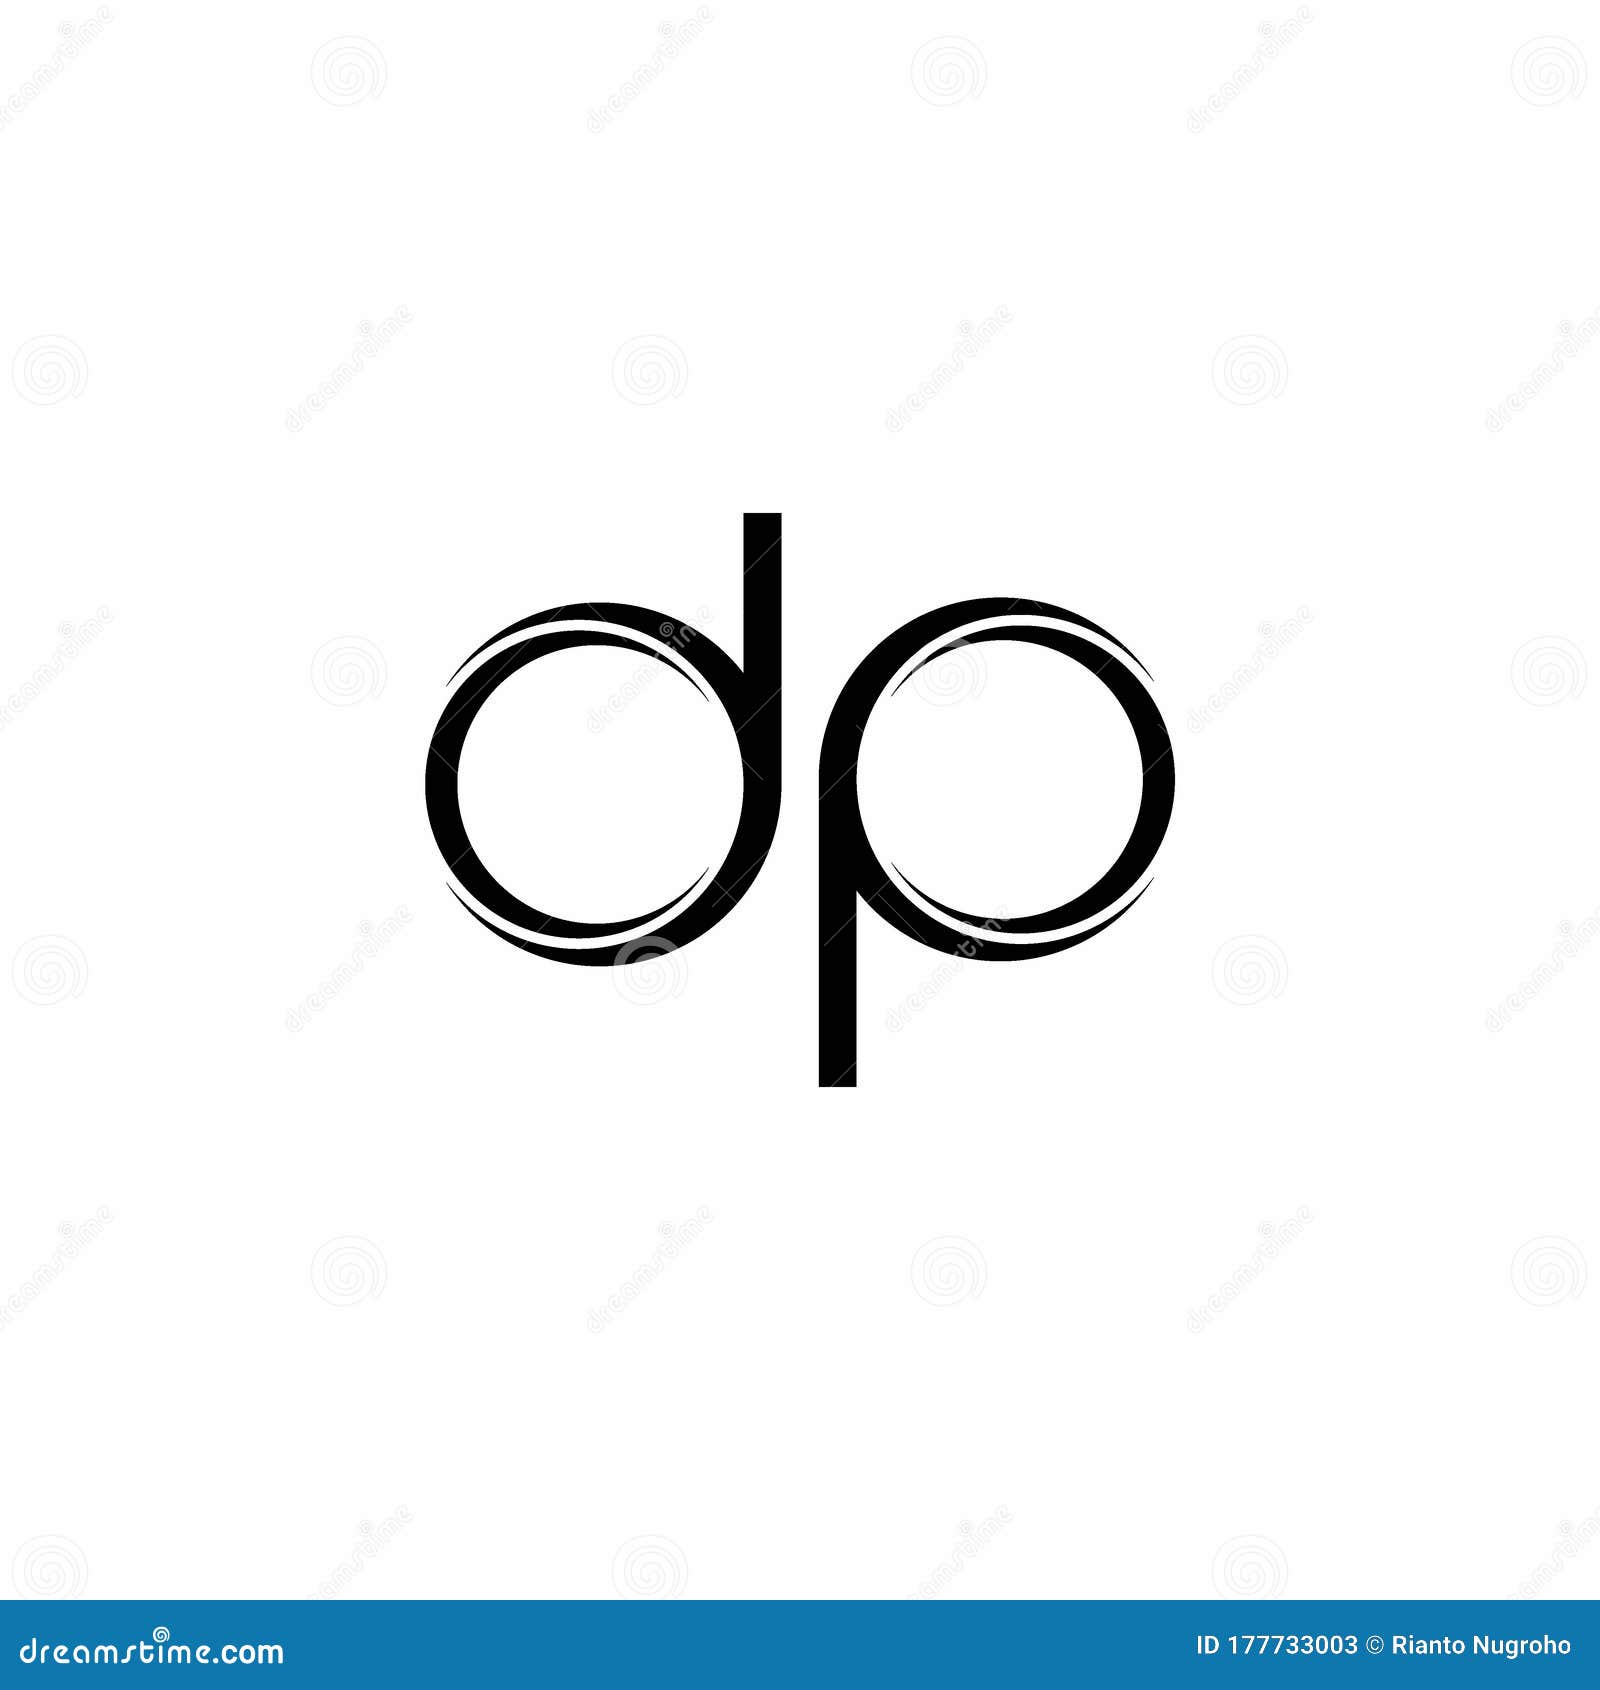 DP Logo Monogram: Một biểu tượng cực kỳ độc đáo và đầy ấn tượng của DP Logo Monogram sẽ tiếp thêm sức mạnh cho bất kỳ sản phẩm nào sử dụng nó. Từ phong cách cổ điển đến hiện đại, bạn chắc chắn sẽ tìm được những tác phẩm thật sự xuất sắc cho riêng mình với DP Logo Monogram.